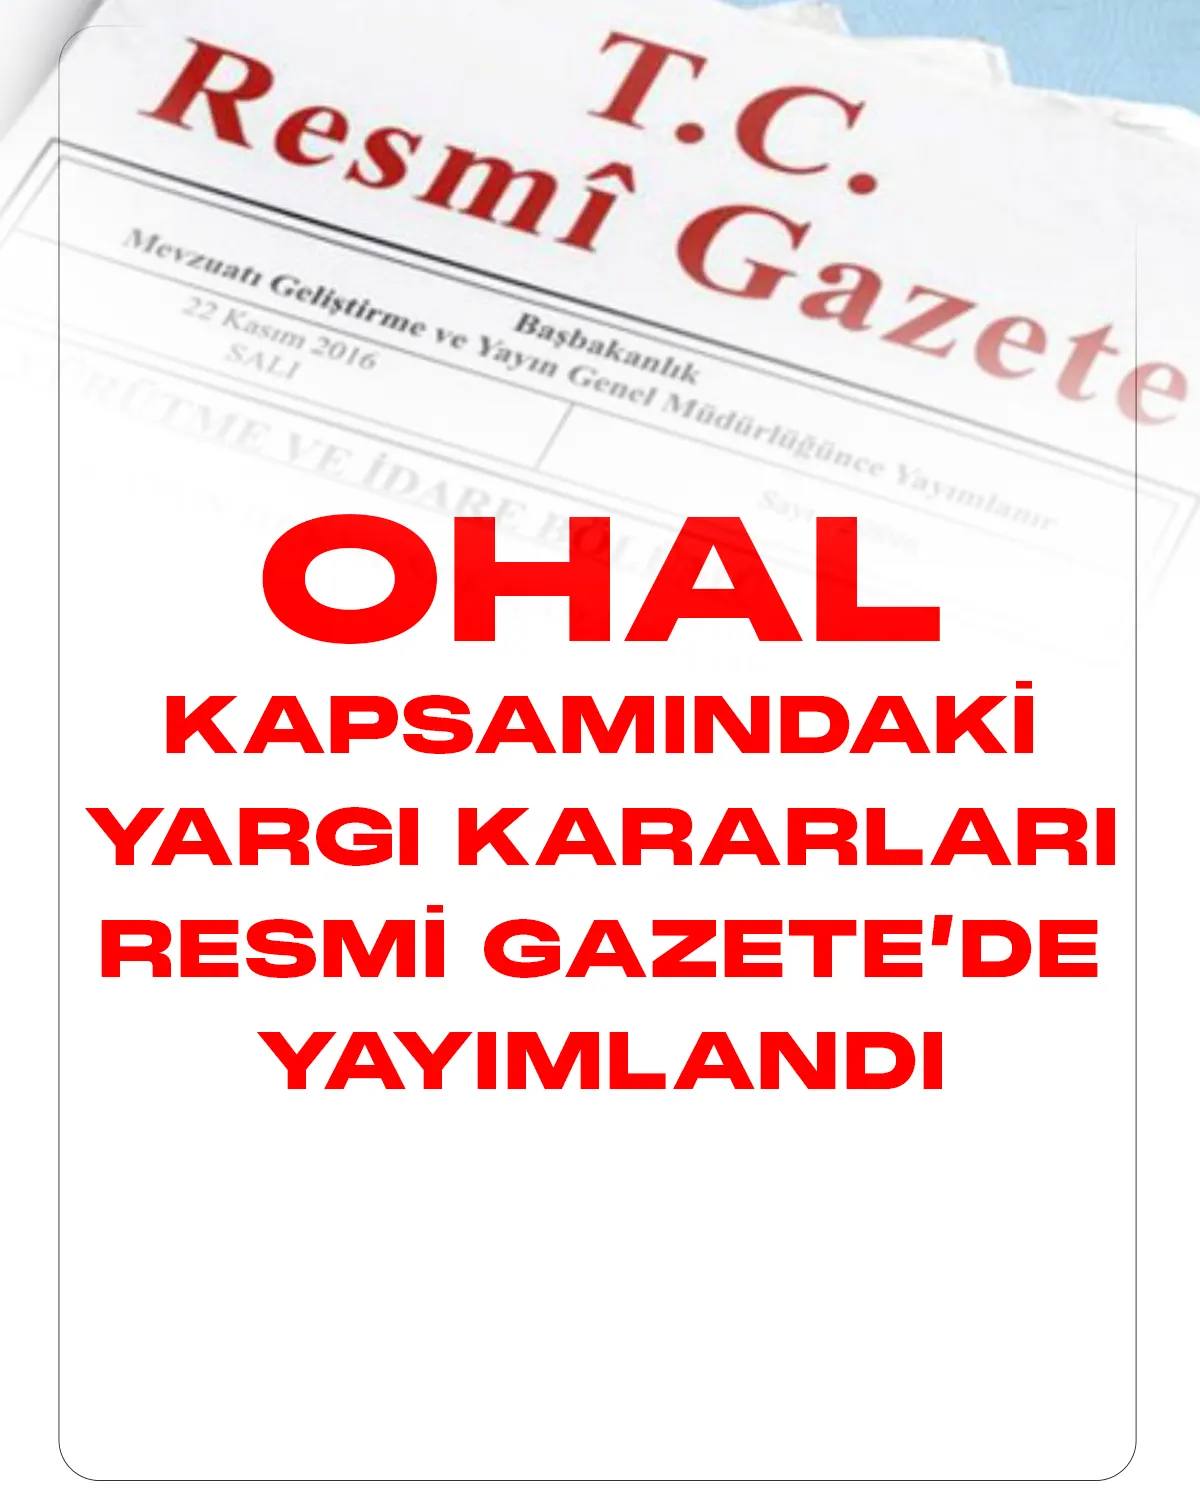 OHAL kapsamındaki yargı kararları 11 Şubat 2023 tarihli Resmi Gazete'de yayımlandı.